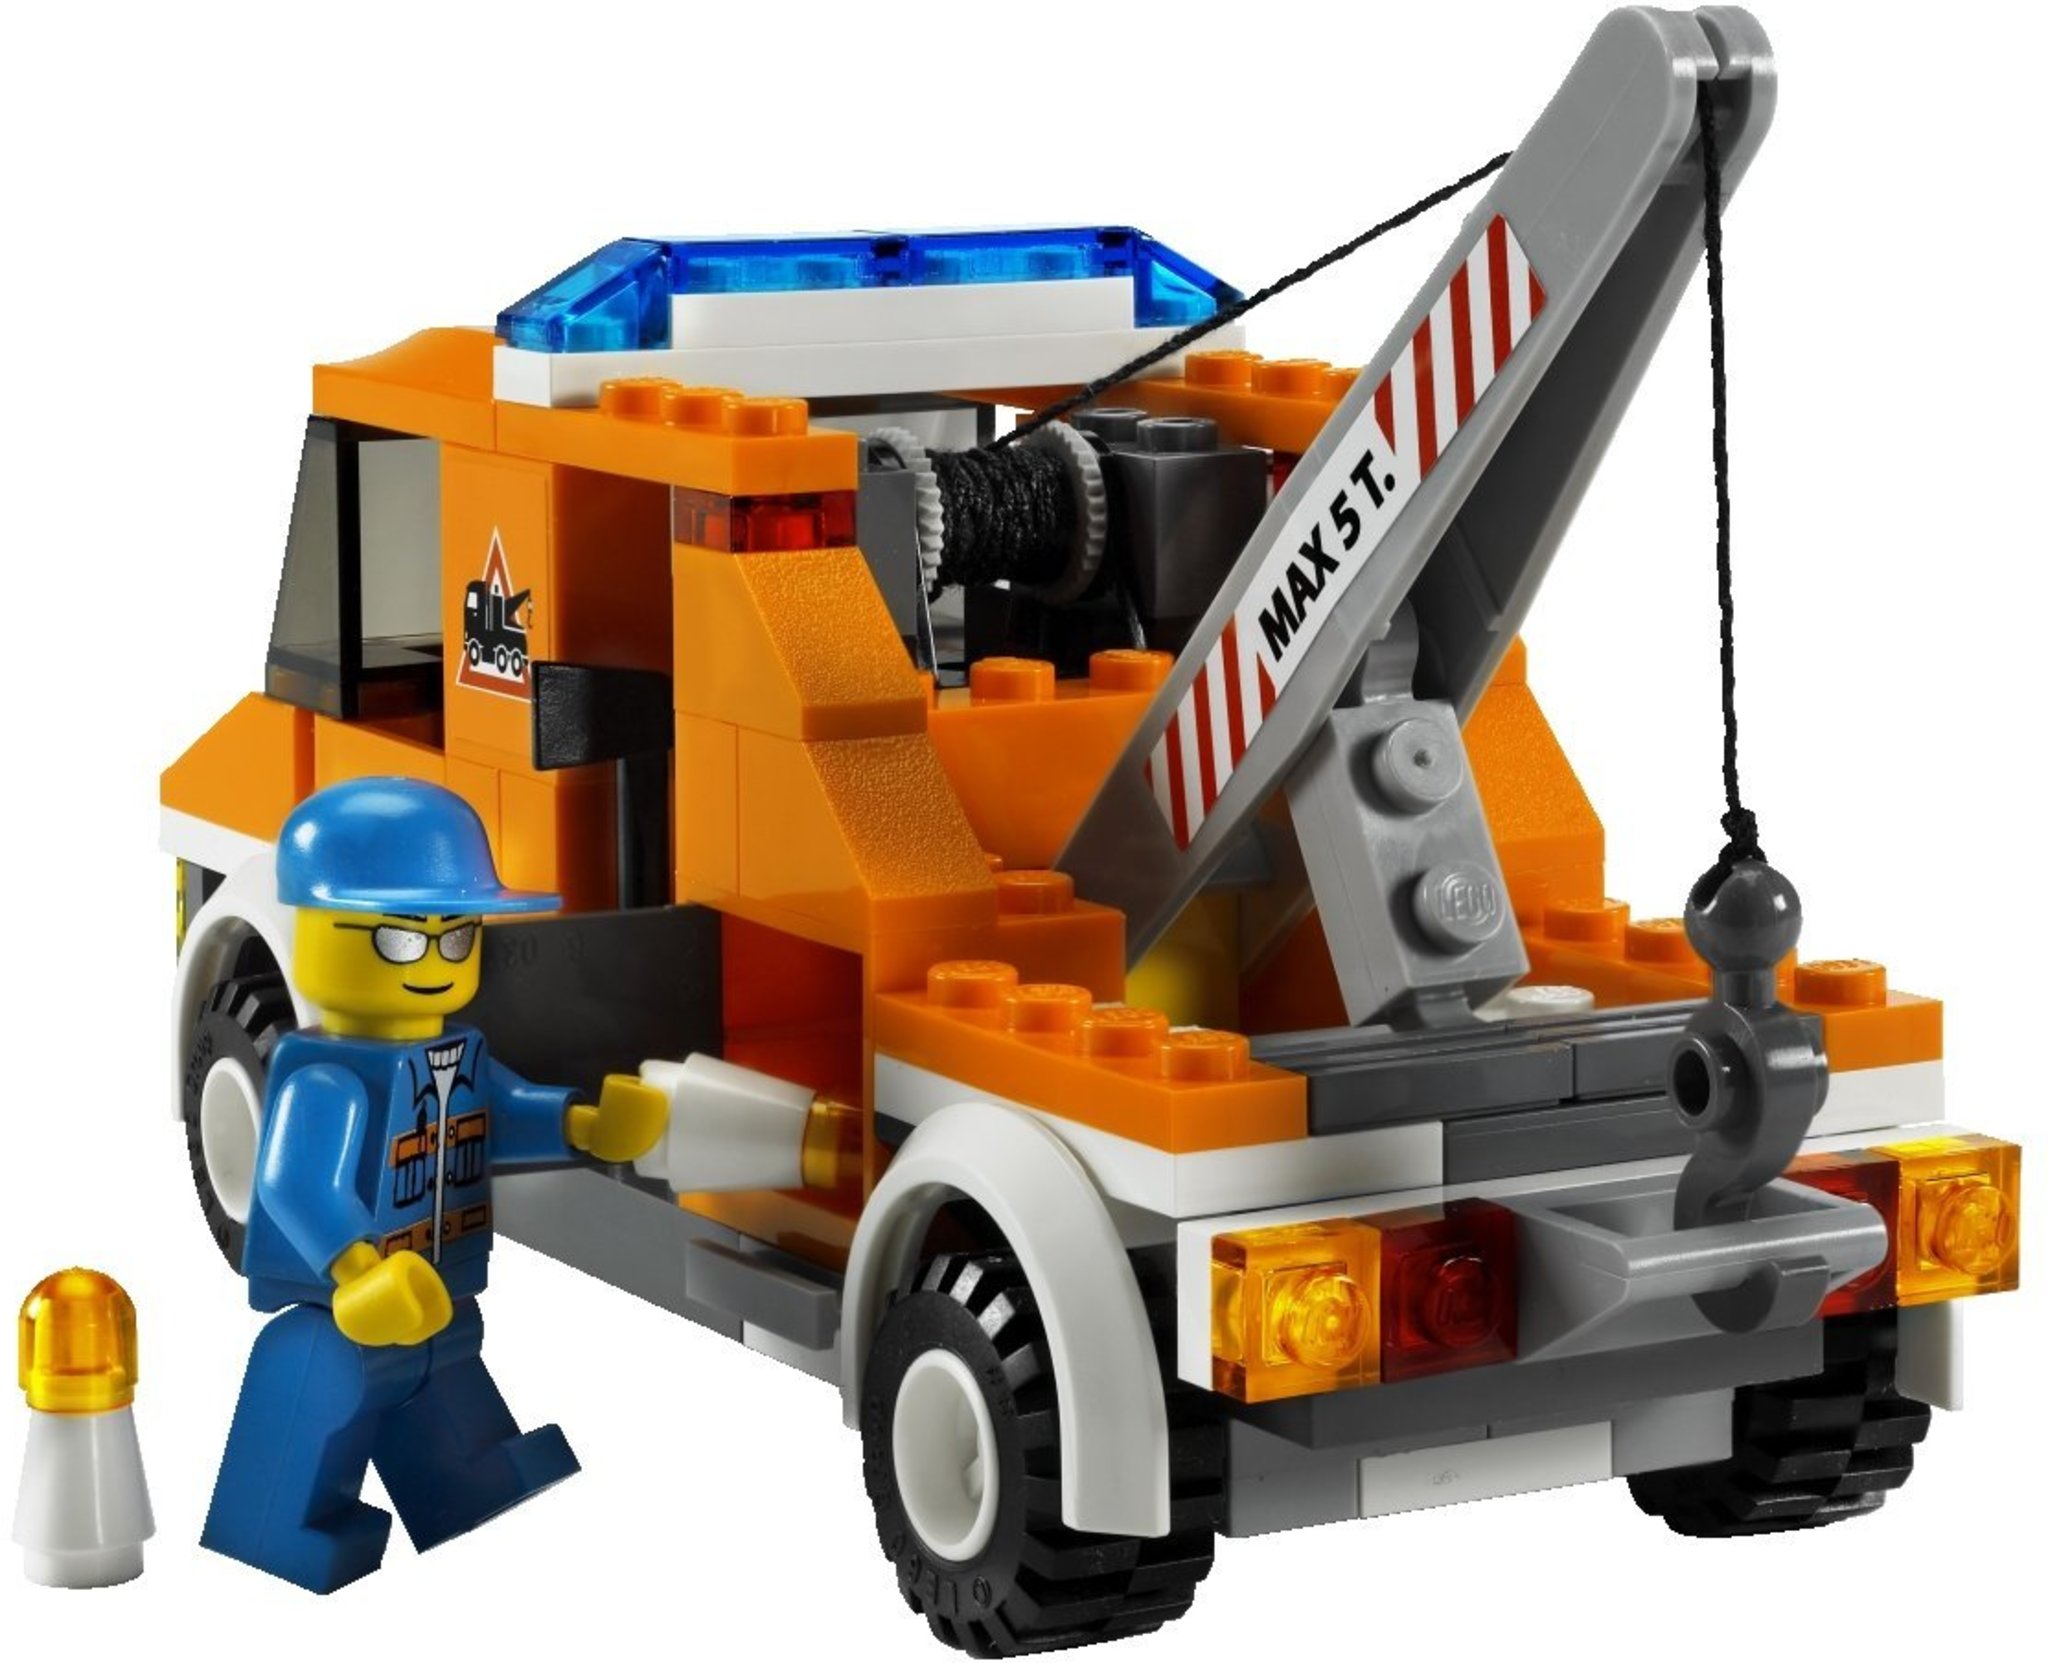 LEGO City 7638 - Tow Truck | Mattonito